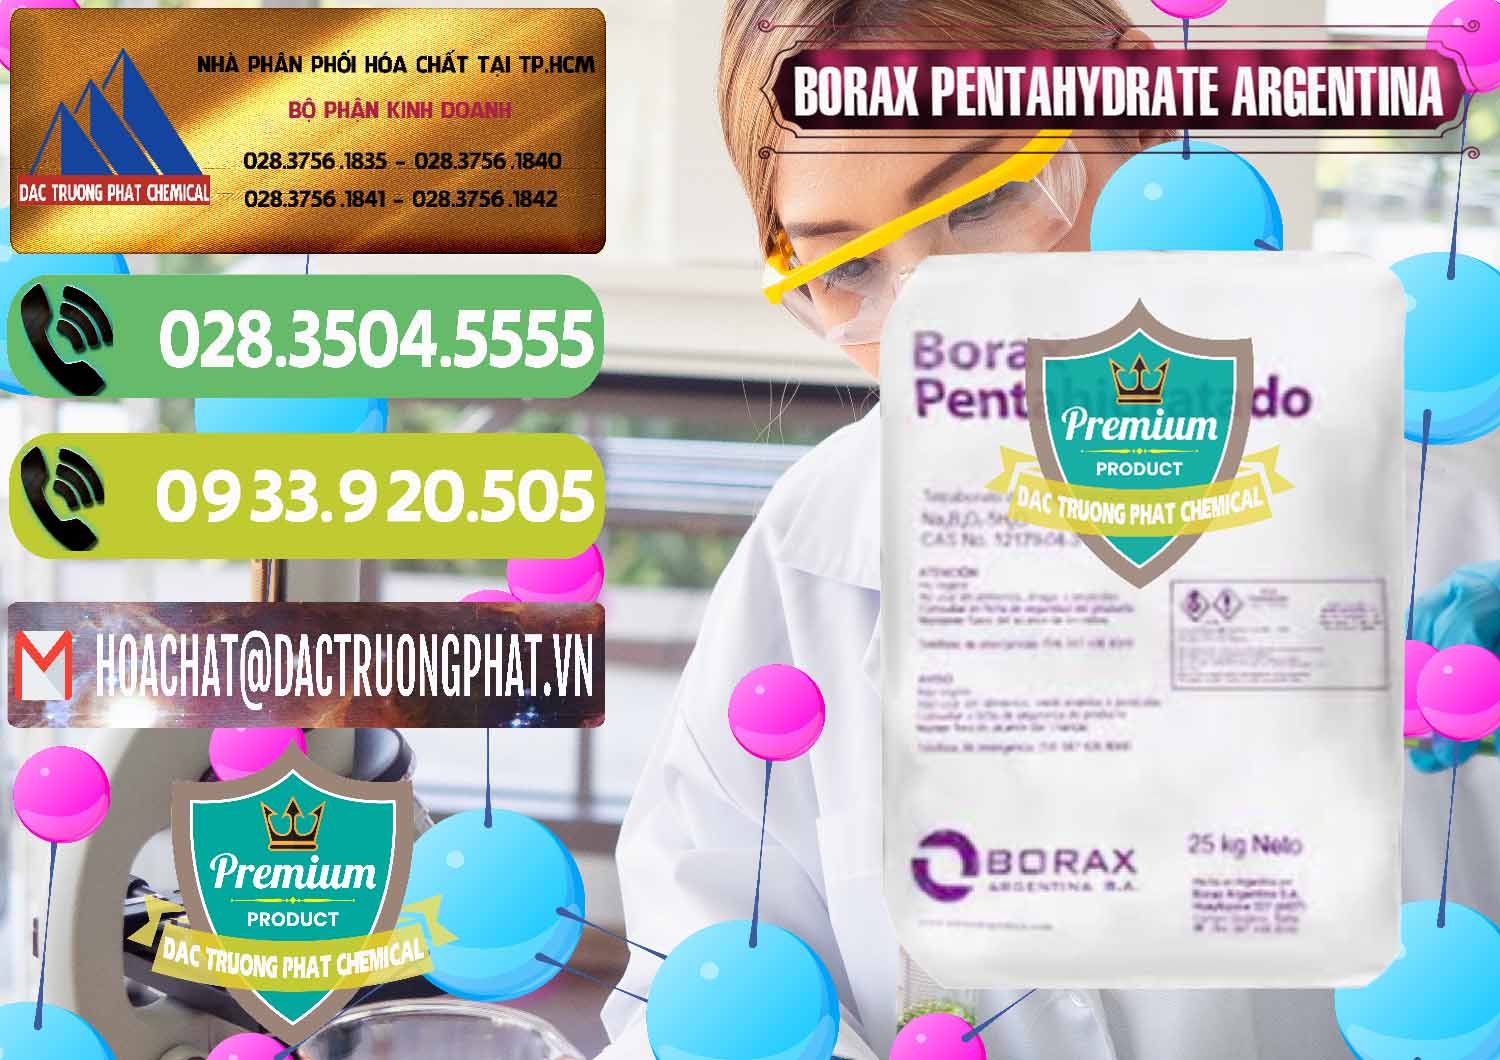 Cty kinh doanh _ bán Borax Pentahydrate Argentina - 0447 - Nhà cung cấp và bán hóa chất tại TP.HCM - hoachatmientay.vn